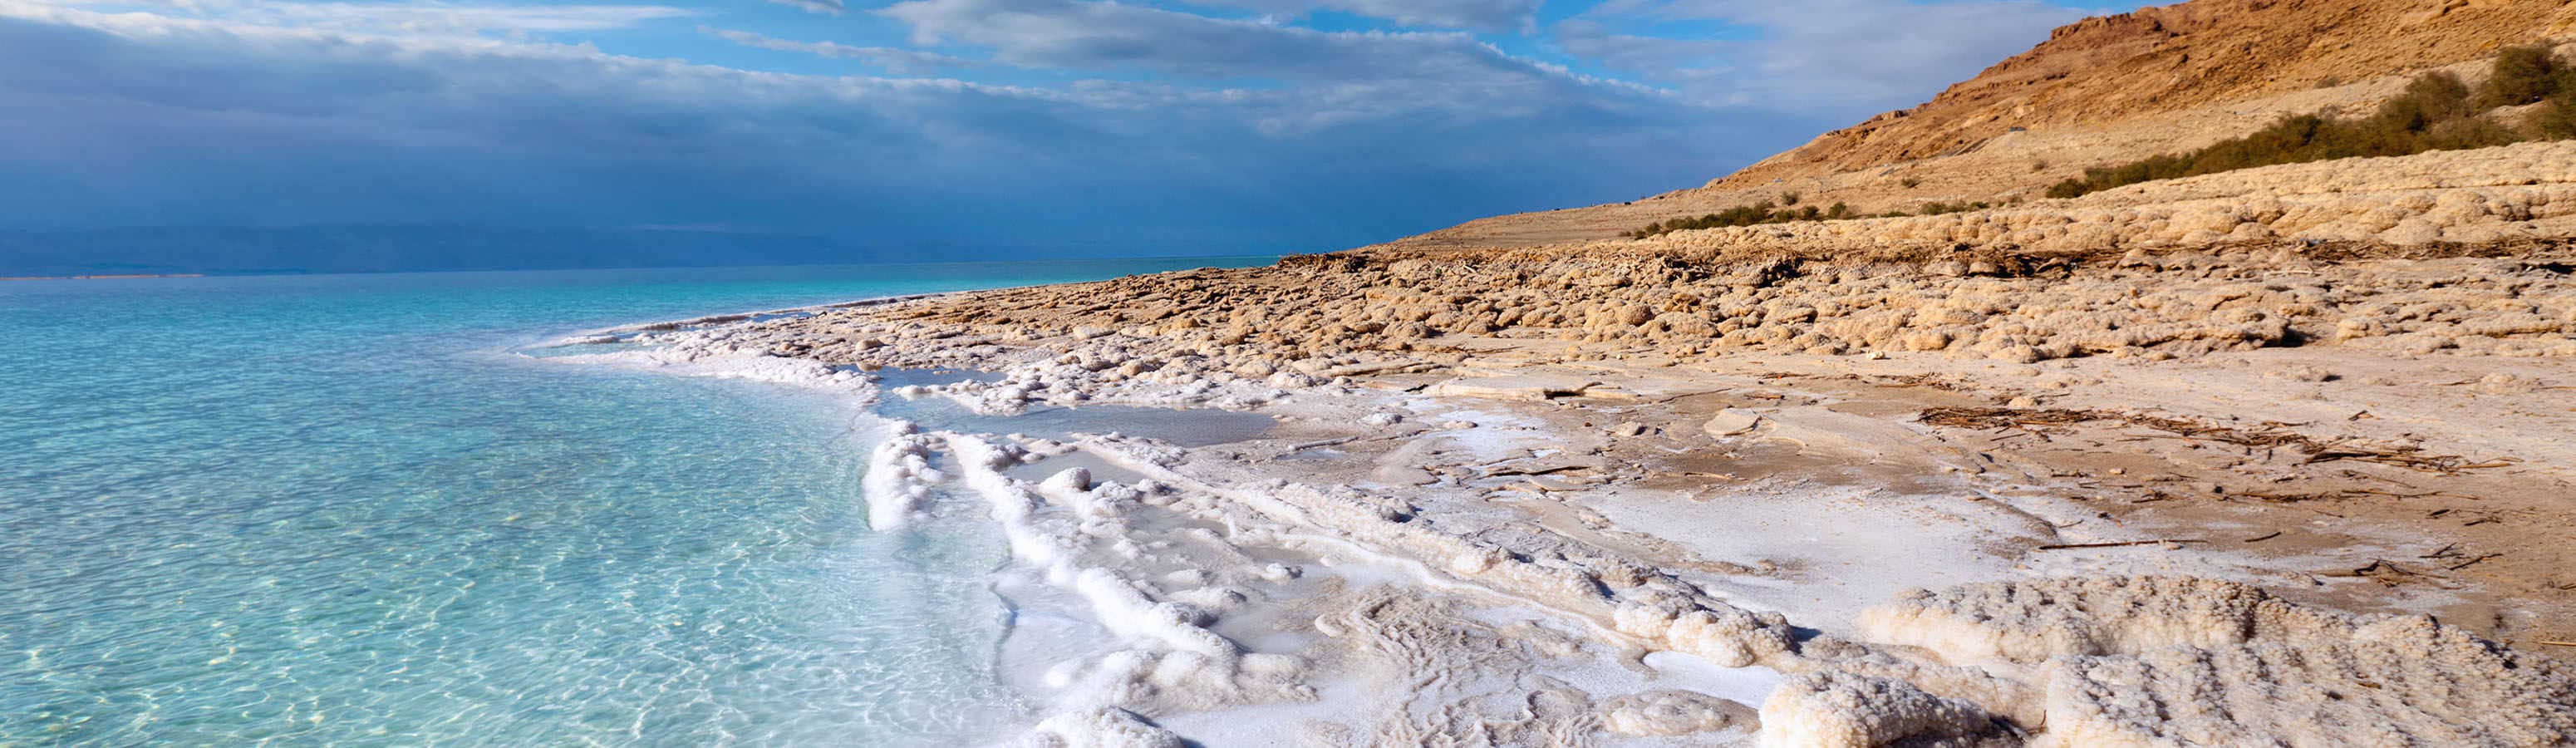 Вы можете ходить на Мертвое море круглый год - вам не будет скучно